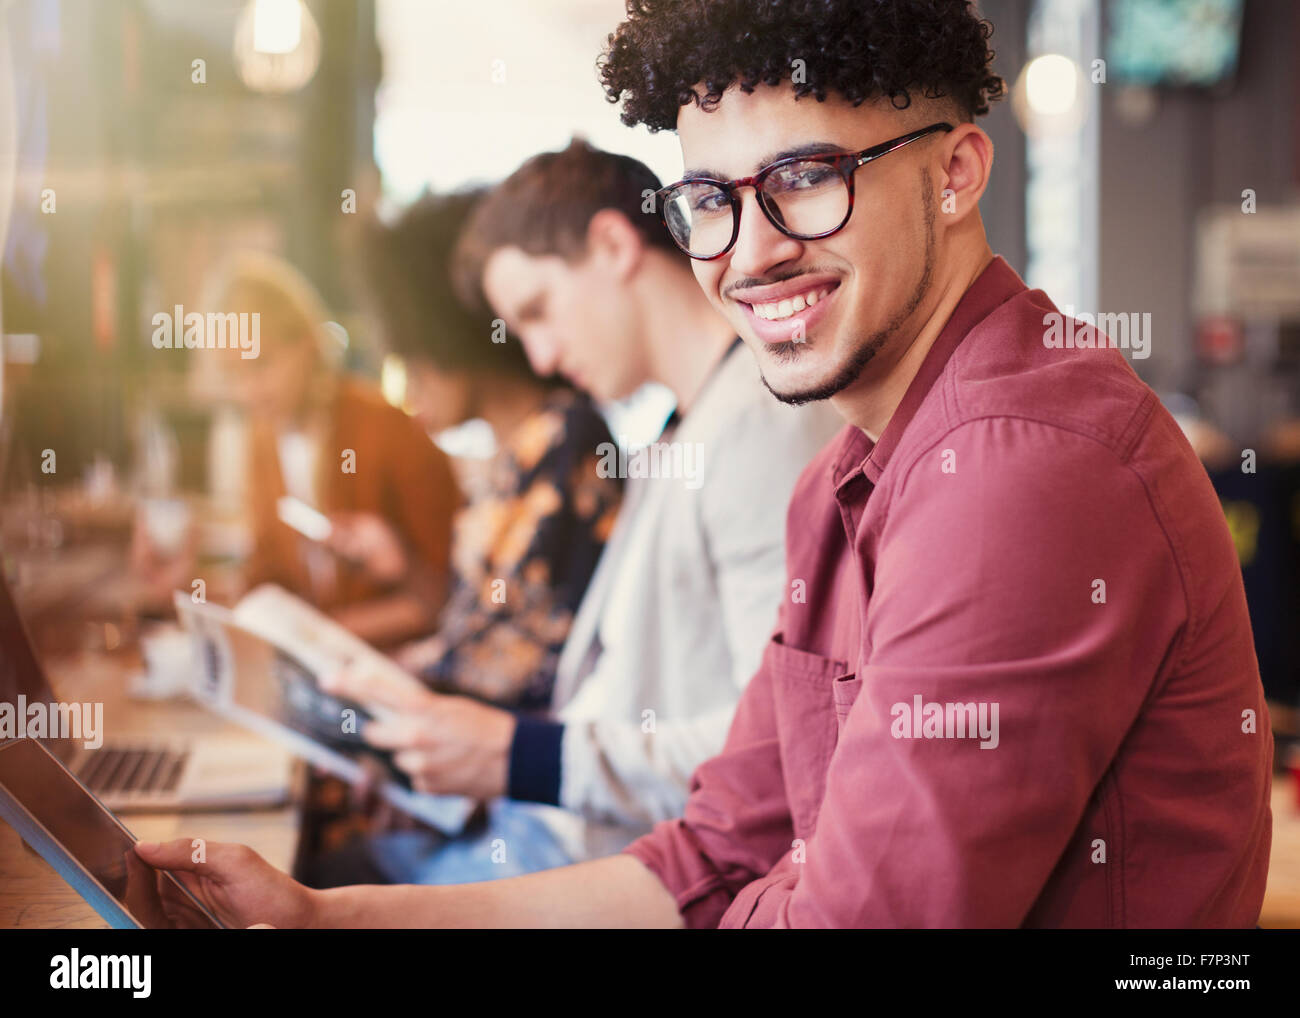 Portrait of smiling man avec les cheveux noirs bouclés using digital tablet in cafe Banque D'Images